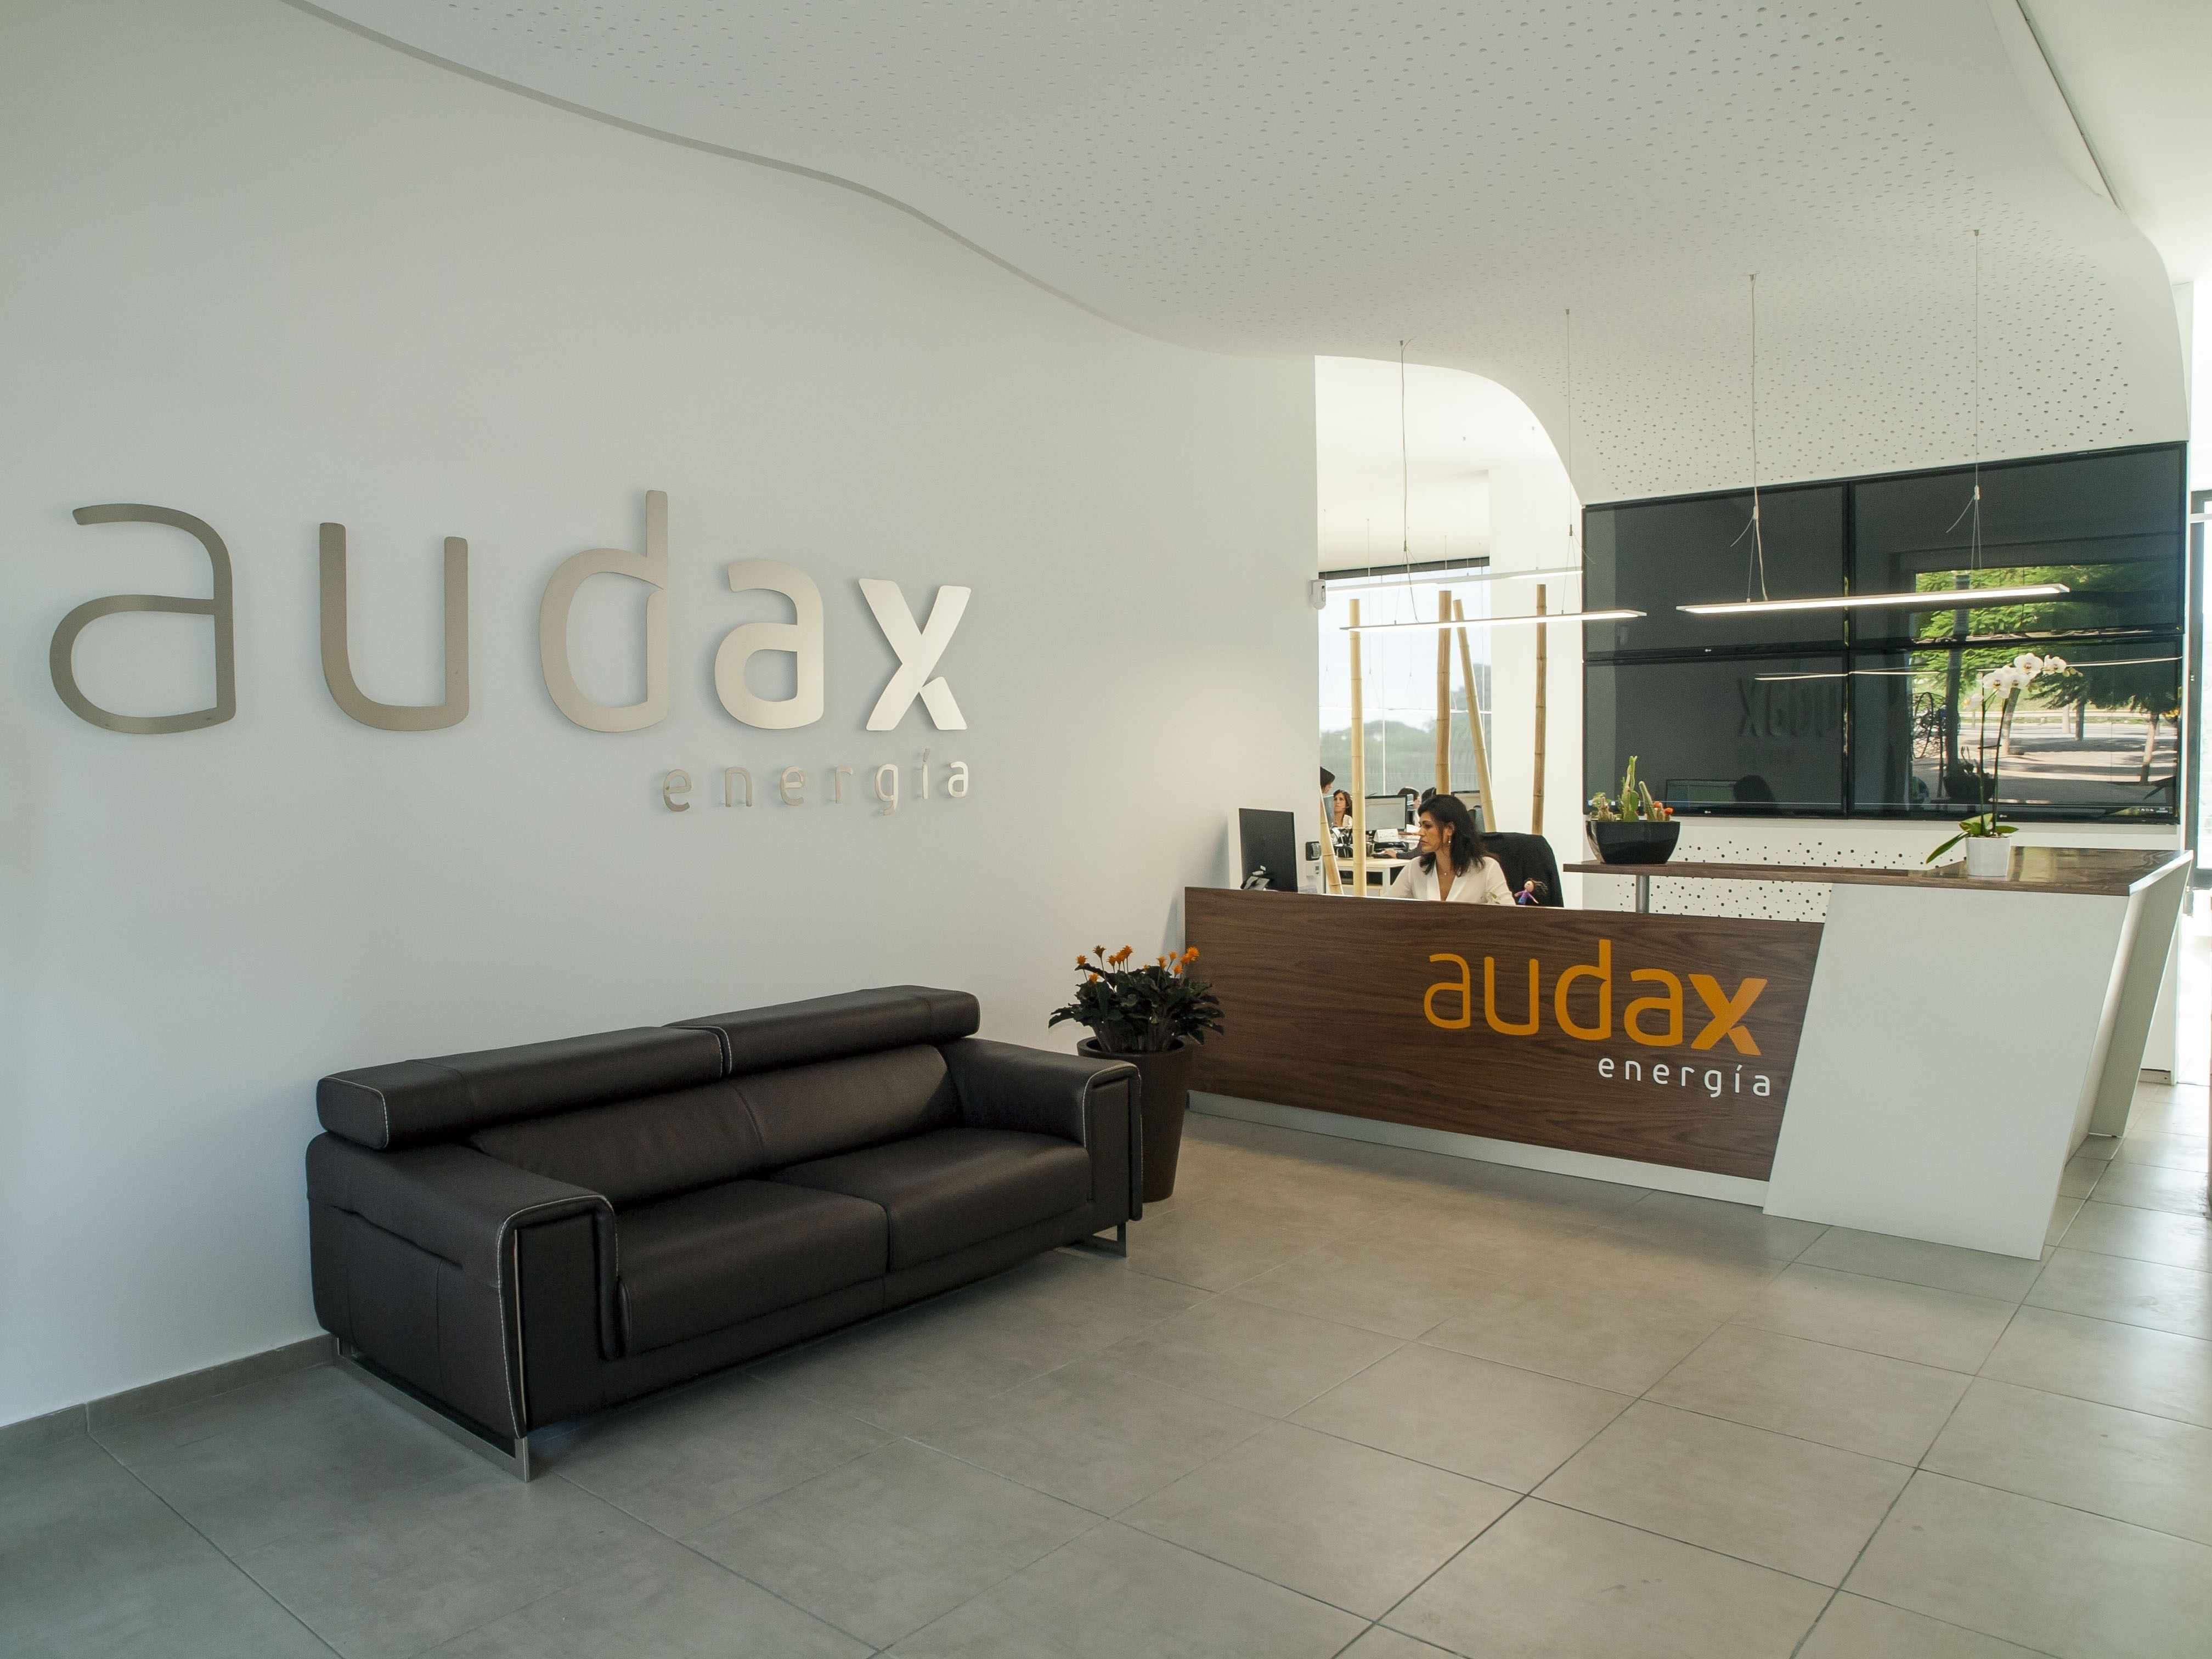 La CNMC multa al Grupo Audax con 9,2 millones por captar clientes de luz y gas fraudulentamente